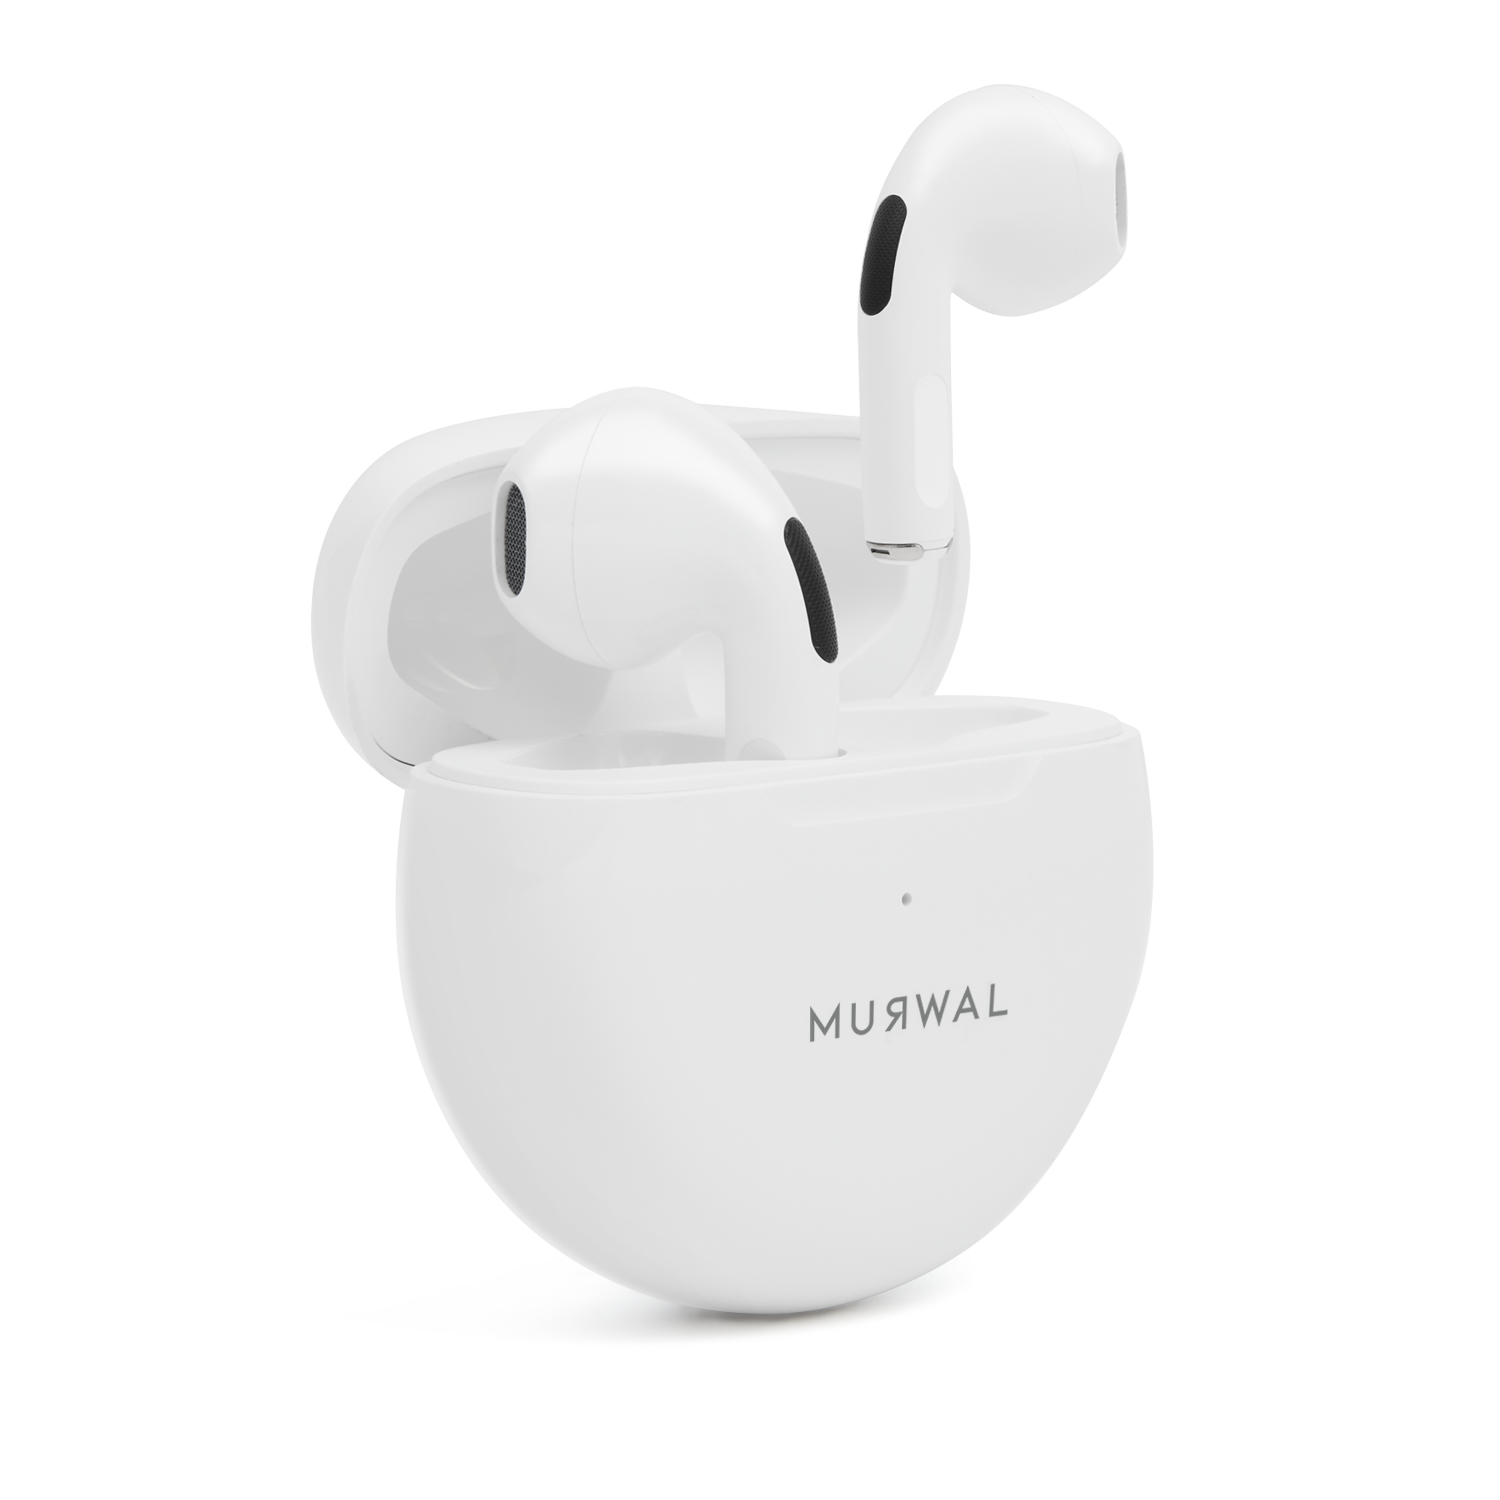 AURICULARES Bluetooth inalámbricos MURWAL MINT con microfono 16Horas de  reproducción, IPX5 Impermeable, reducción de Ruido para Trabajar o Viajar  ideales para el día a día Ajuste perfecto en oreja